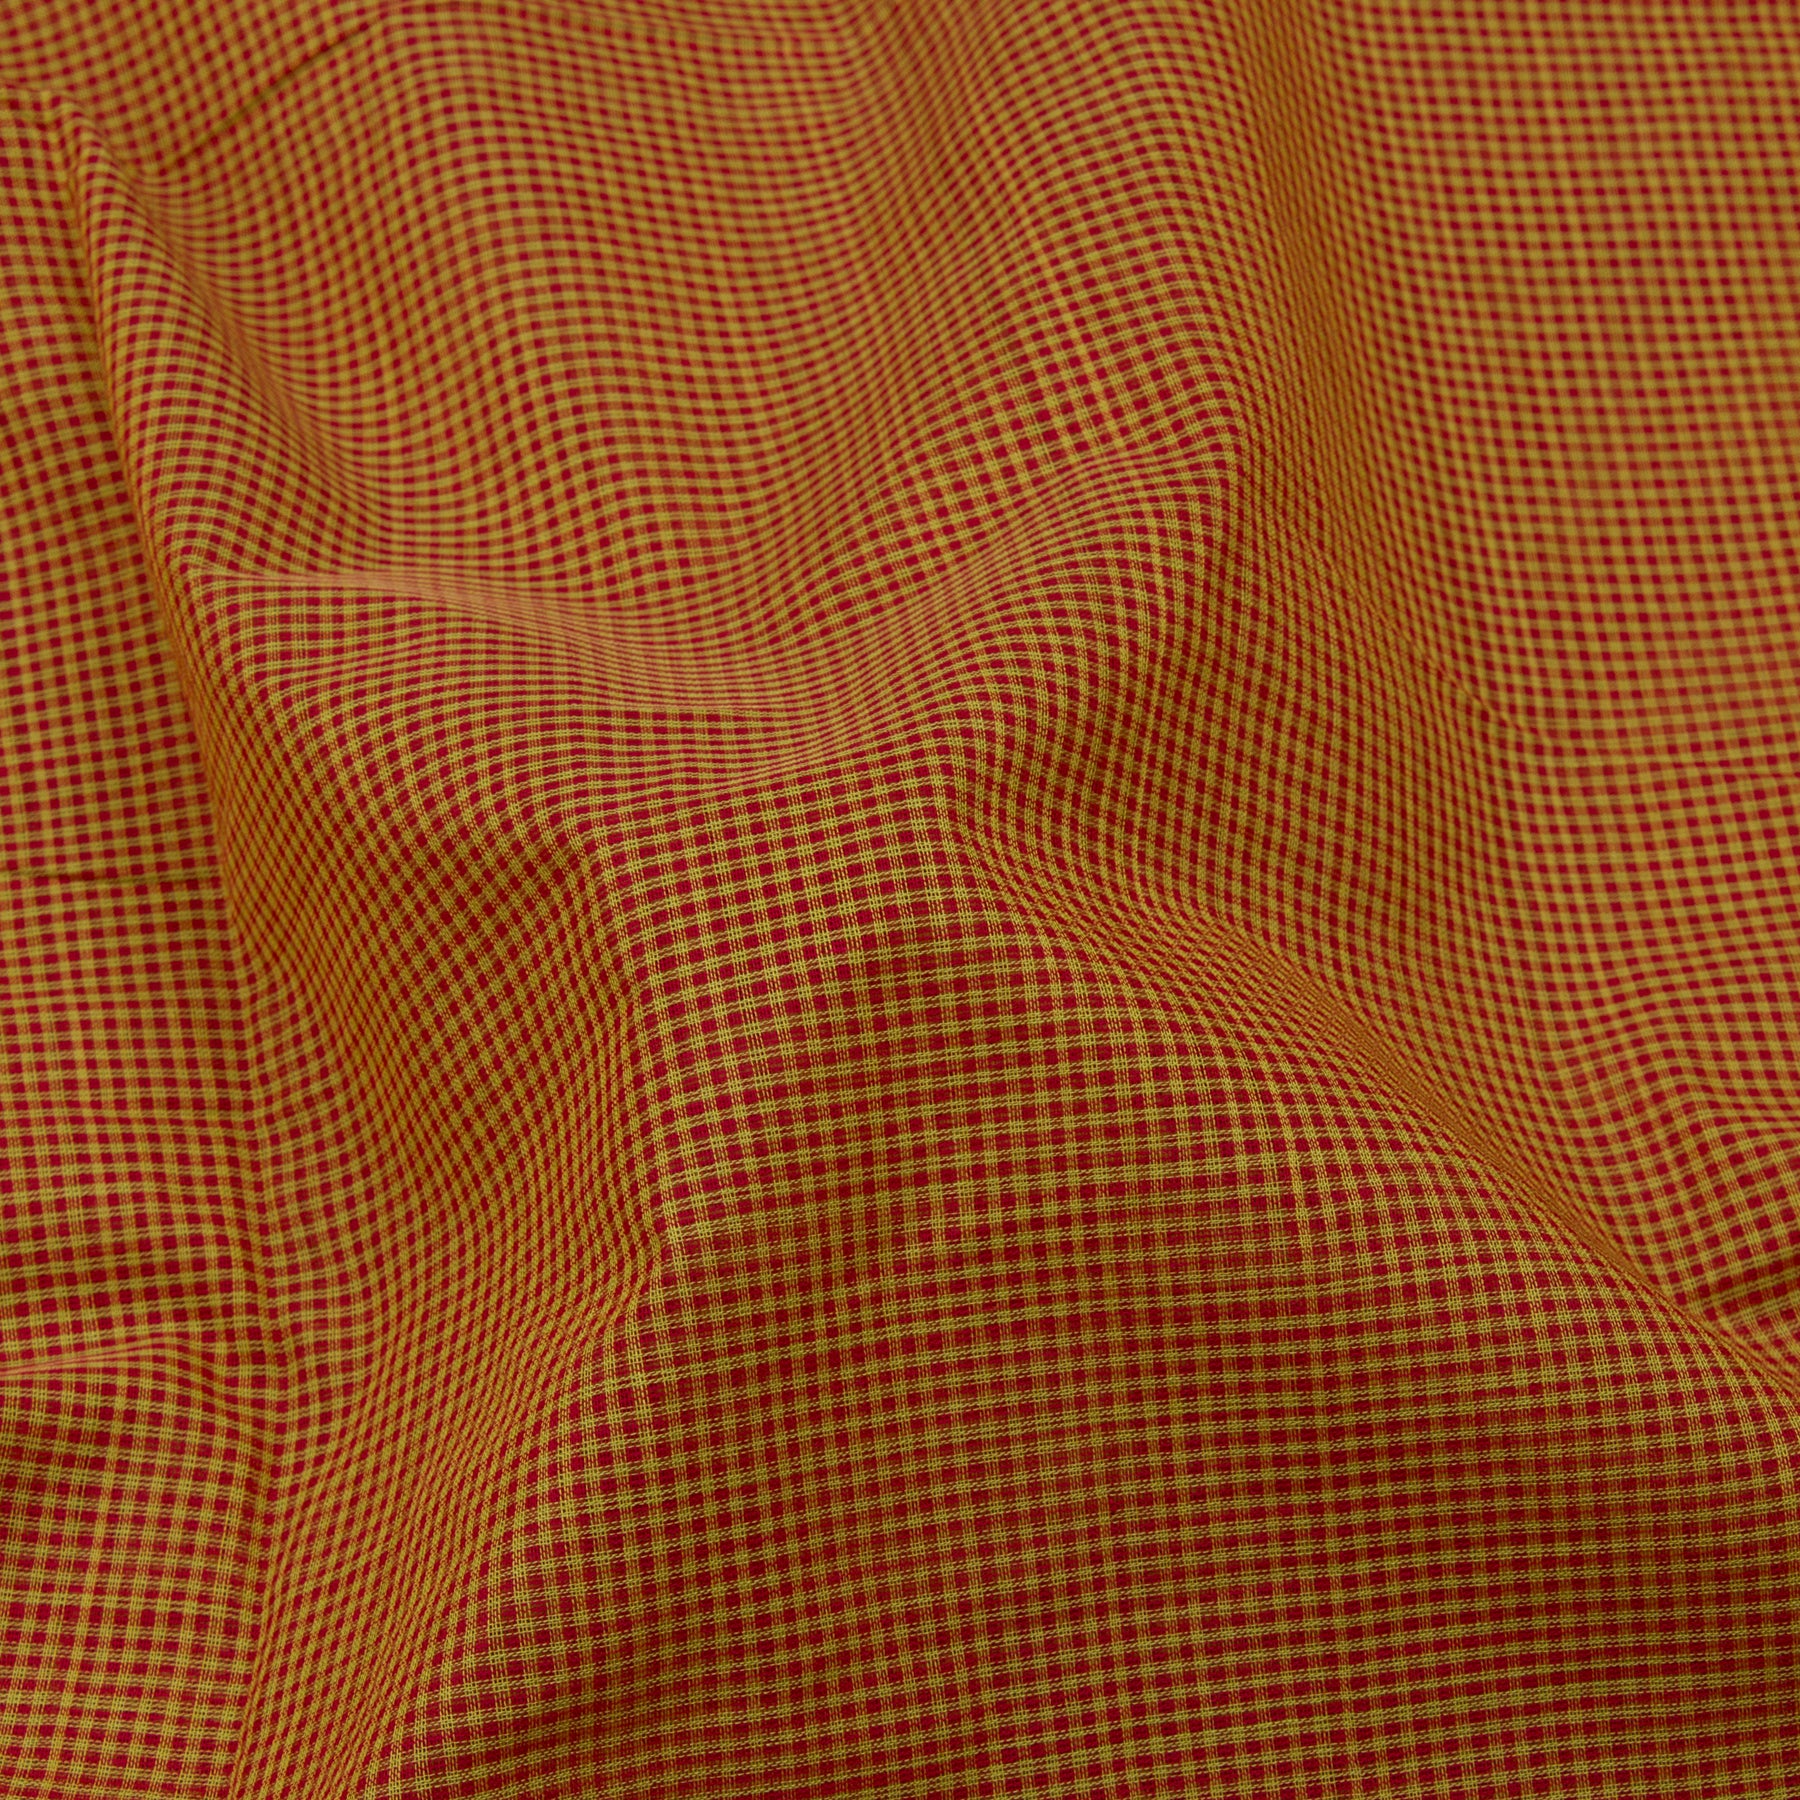 Kanakavalli Mangalgiri Cotton Sari 23-261-HS003-14866 - Fabric View